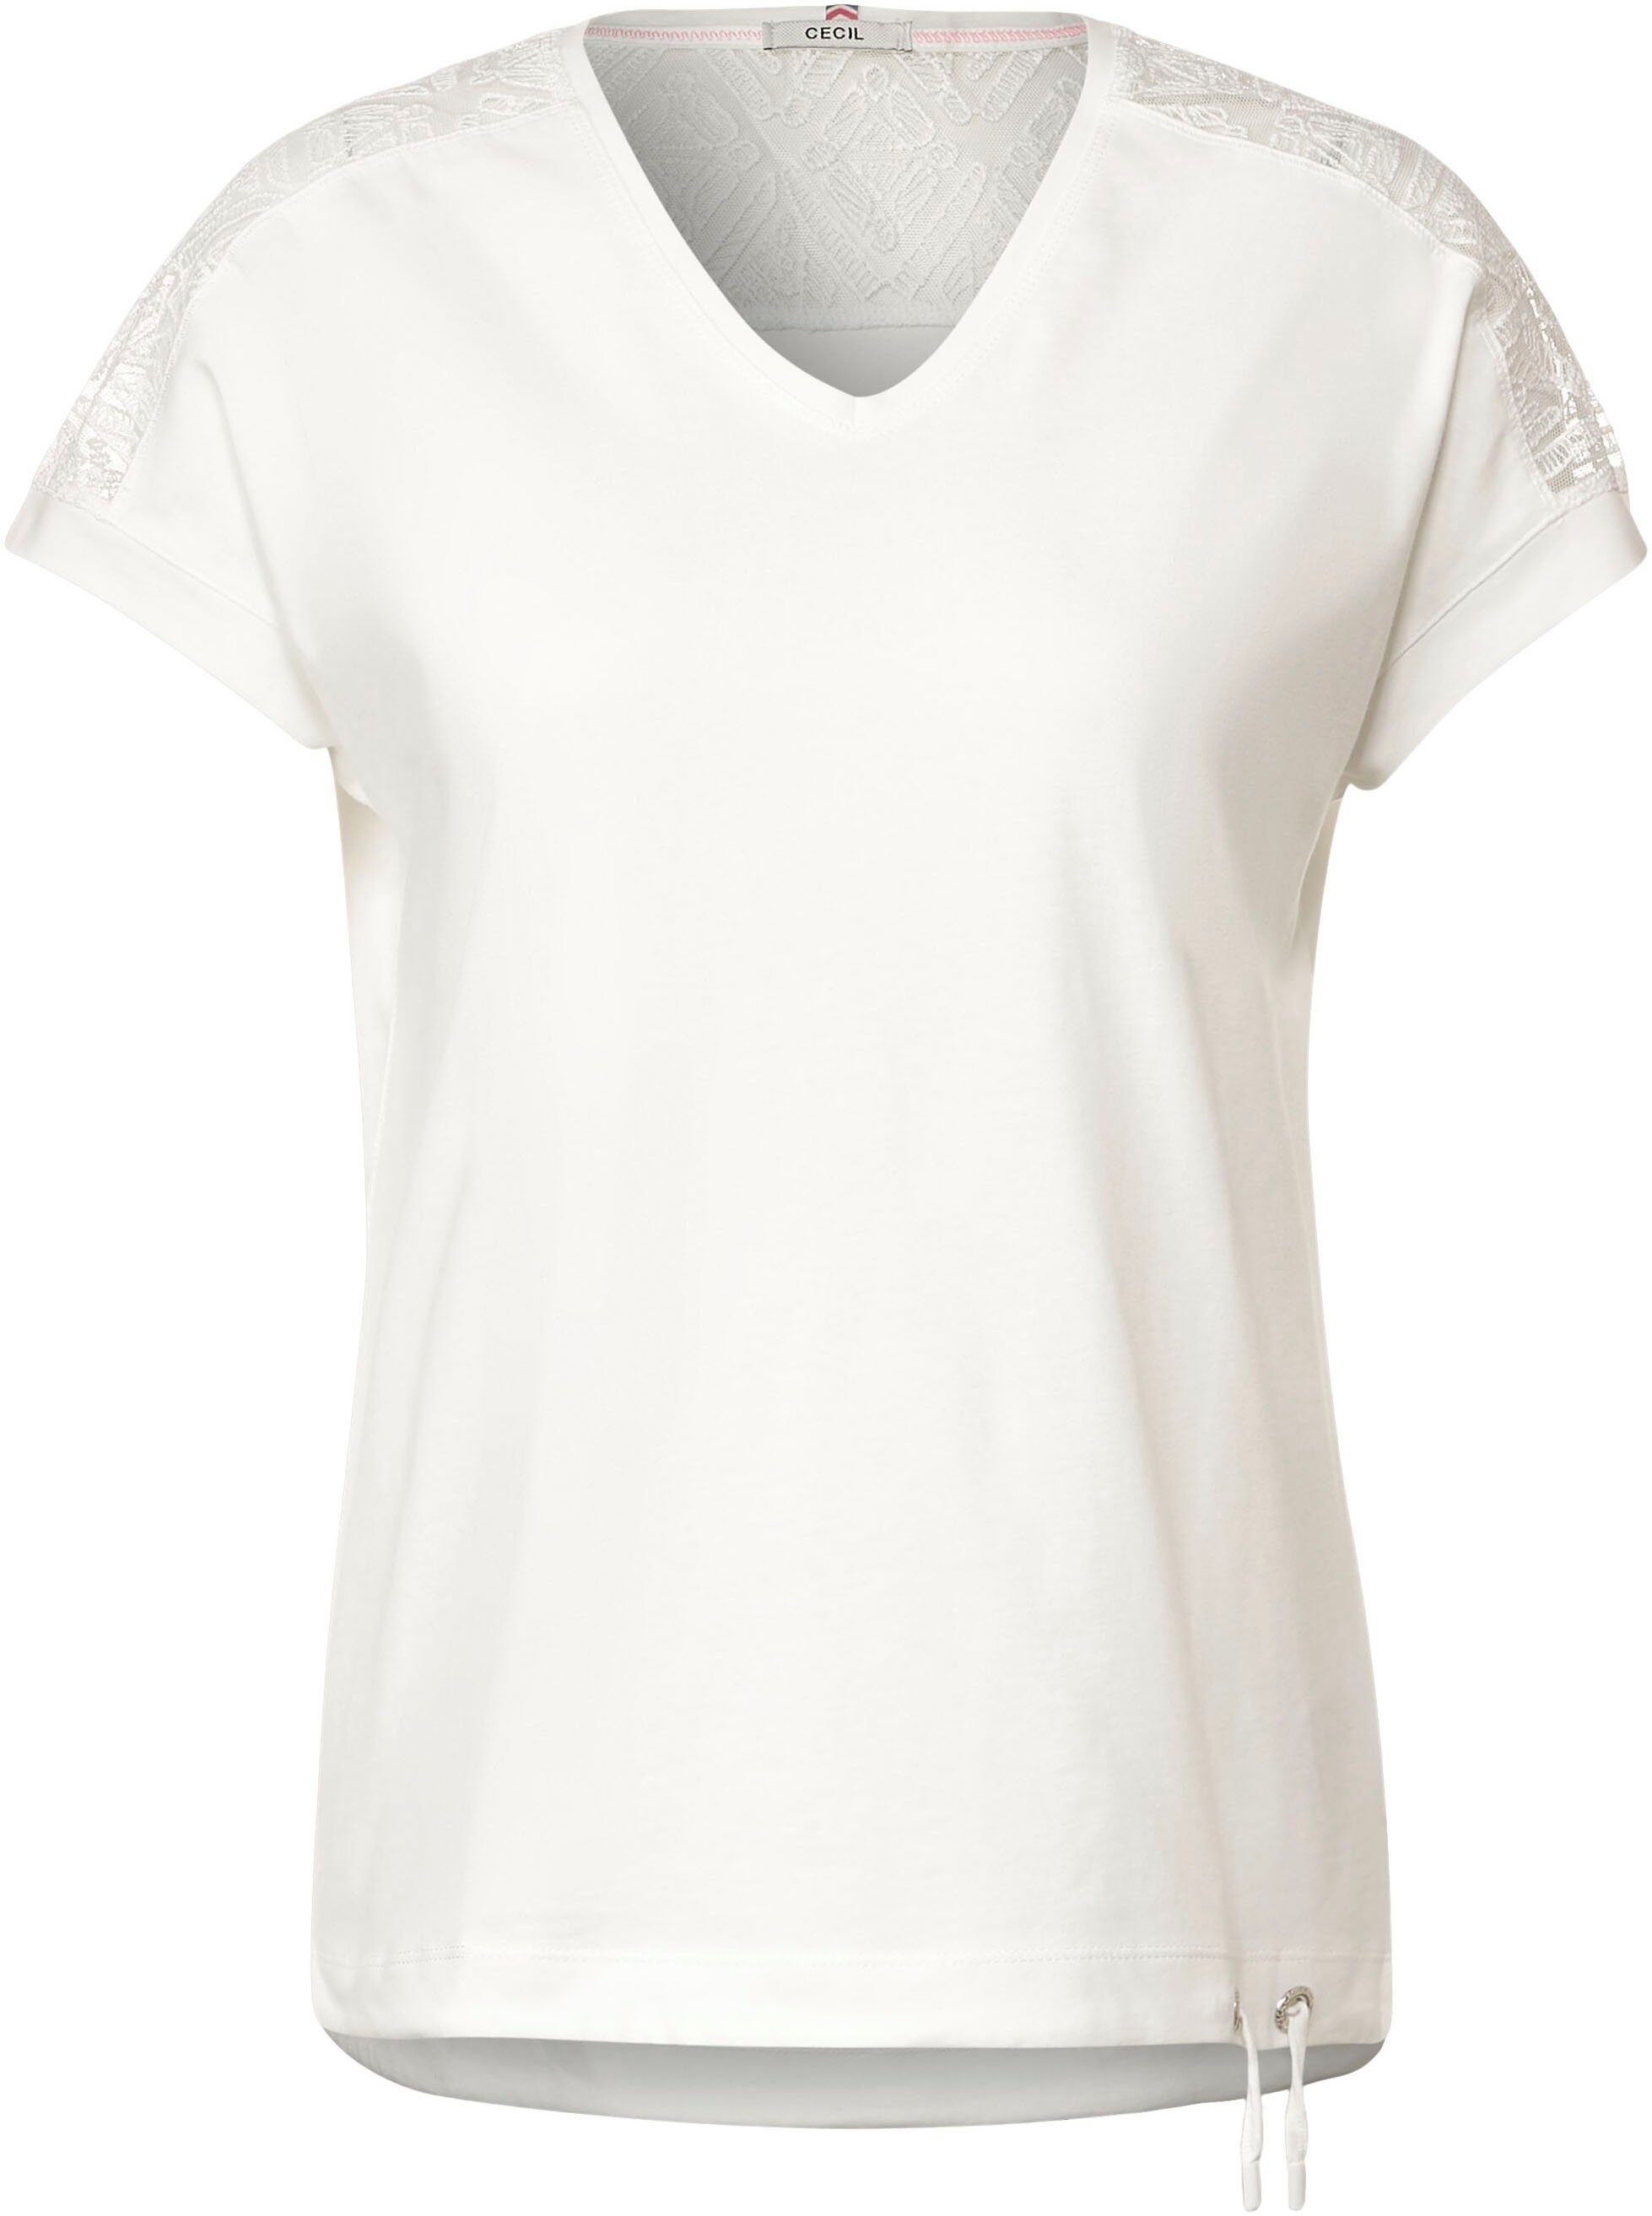 Cecil T-Shirt white vanilla -Ausschnitt leicht abgerundetem V mit